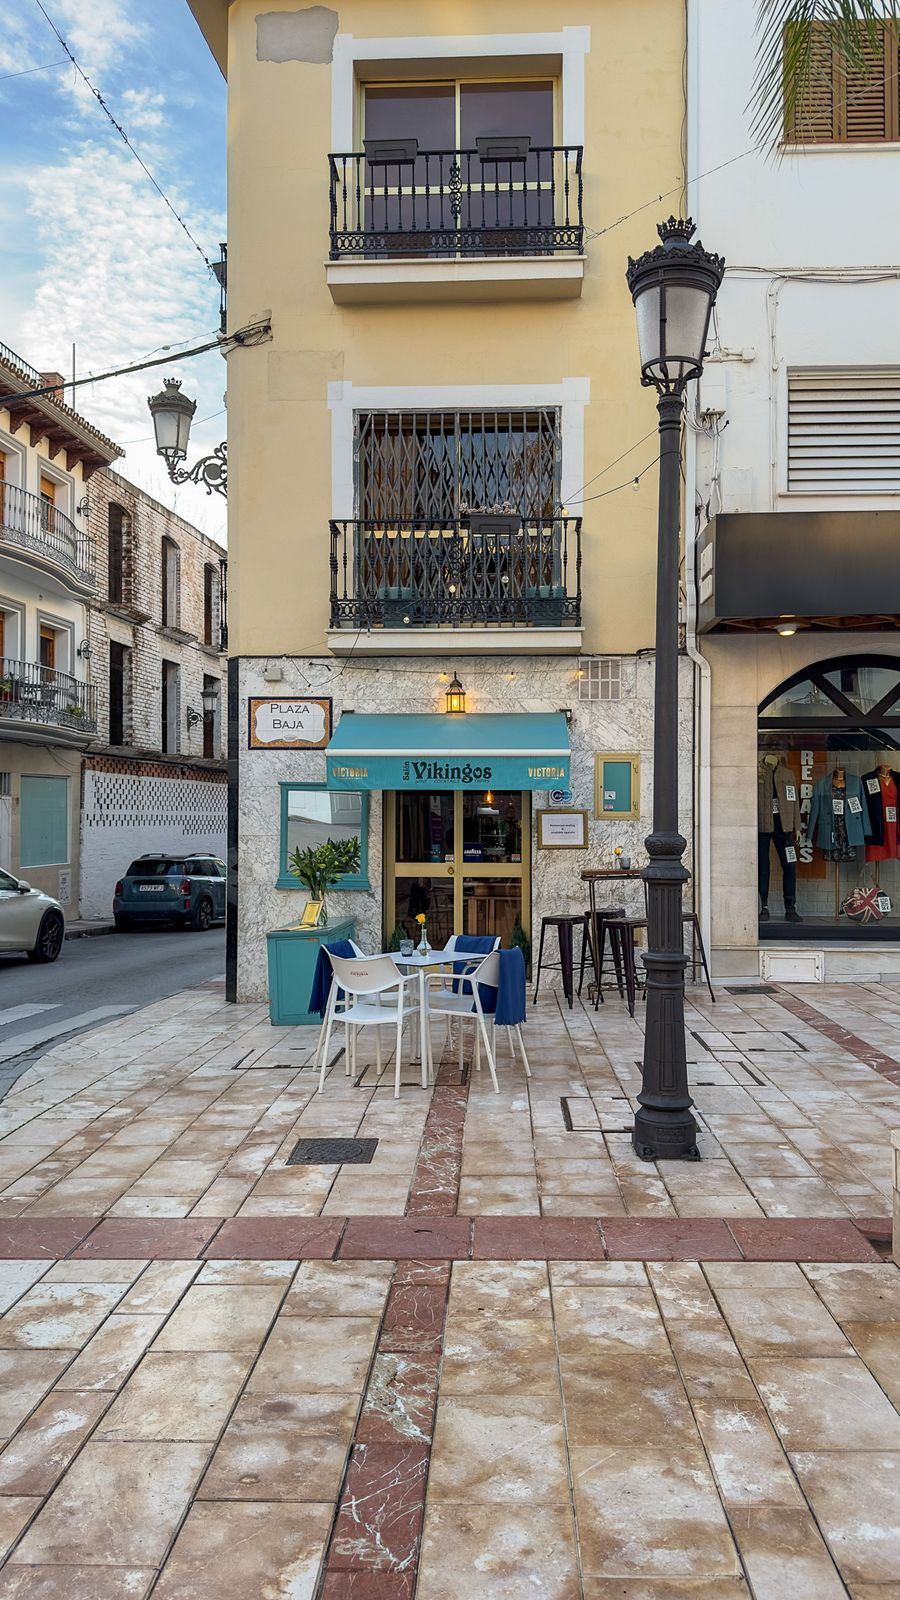 Commercial Restaurant in Alhaurín el Grande, Costa del Sol
